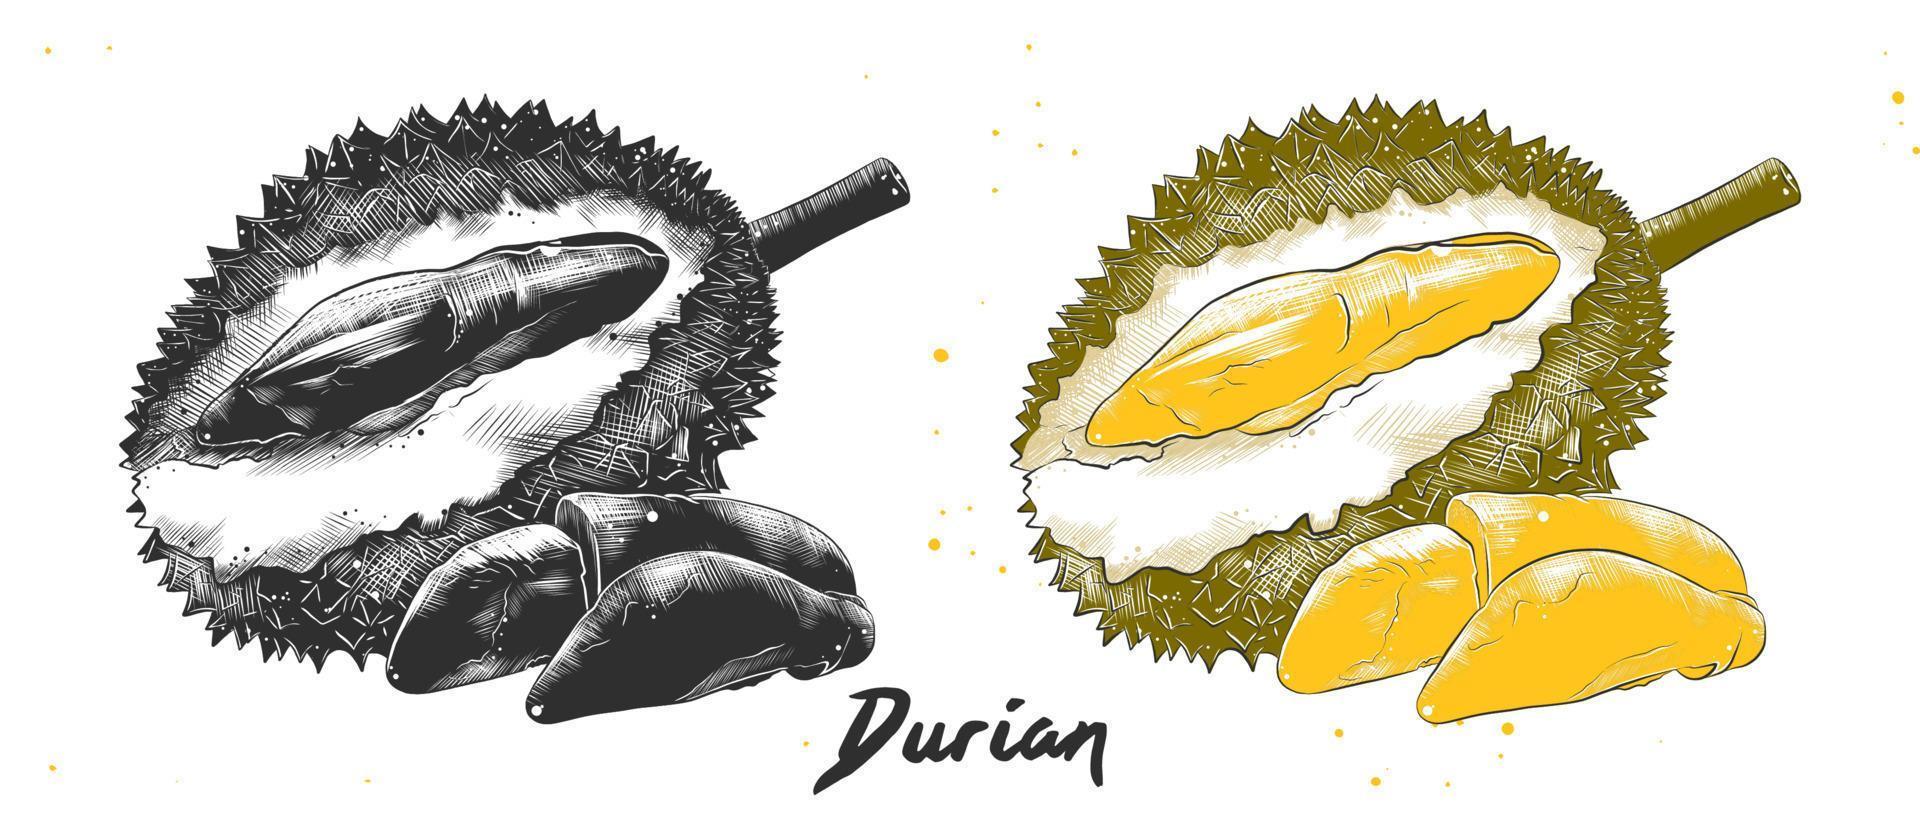 vektor graverat stil illustration för affischer, dekoration och skriva ut. hand dragen skiss av Durian i svartvit och färgrik. detaljerad vegetarian mat teckning.